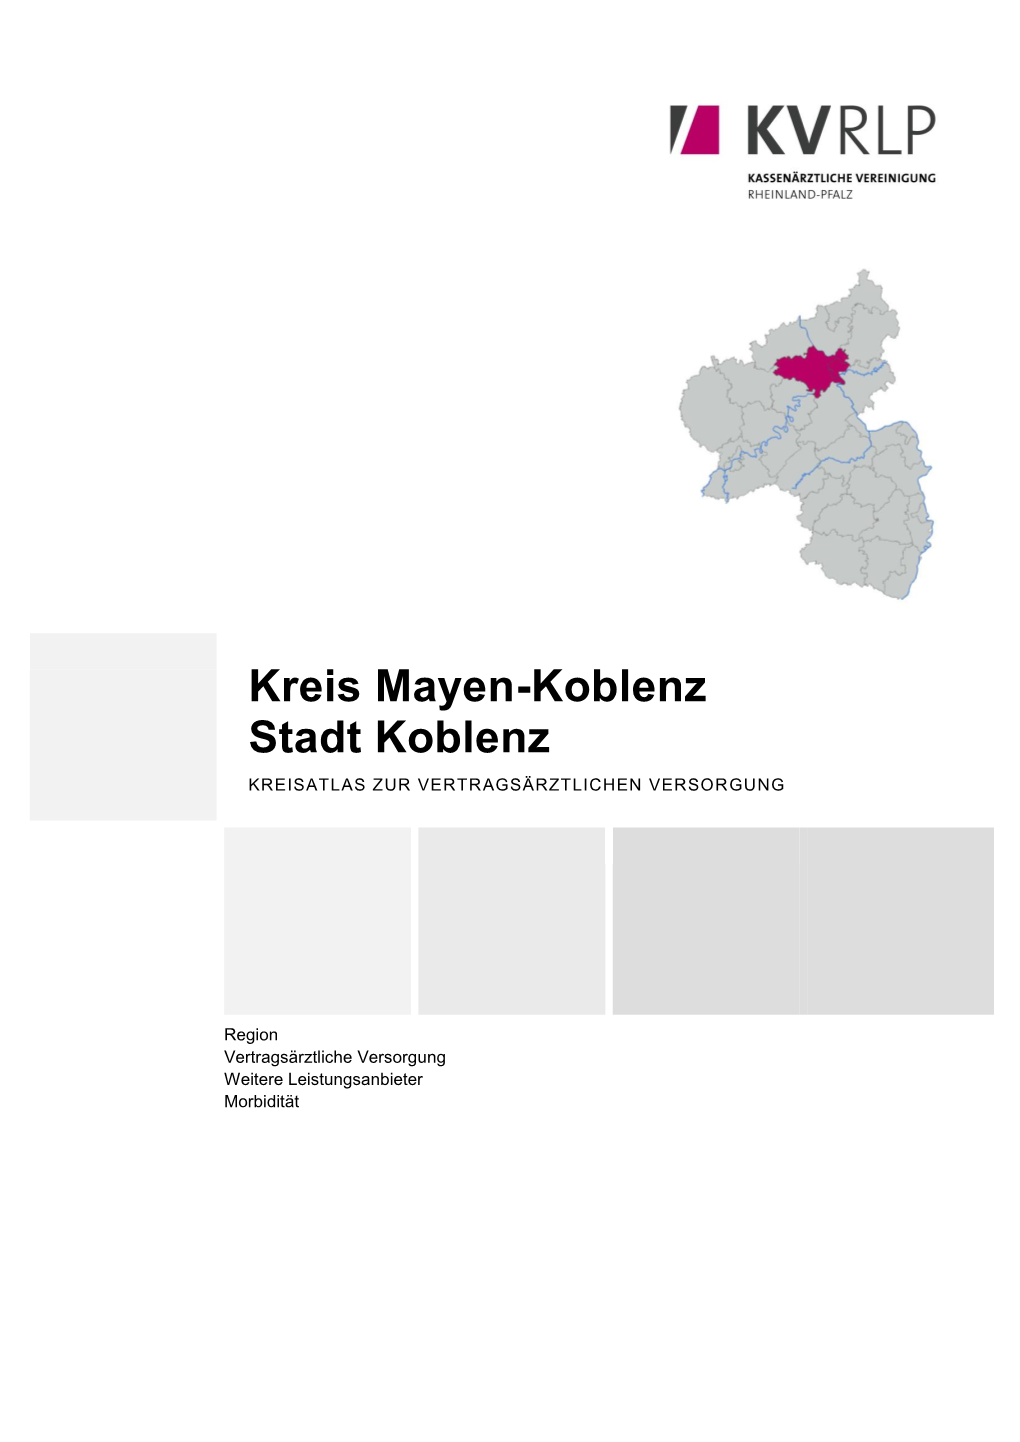 Kreis Mayen-Koblenz Stadt Koblenz KREISATLAS ZUR VERTRAGSÄRZTLICHEN VERSORGUNG